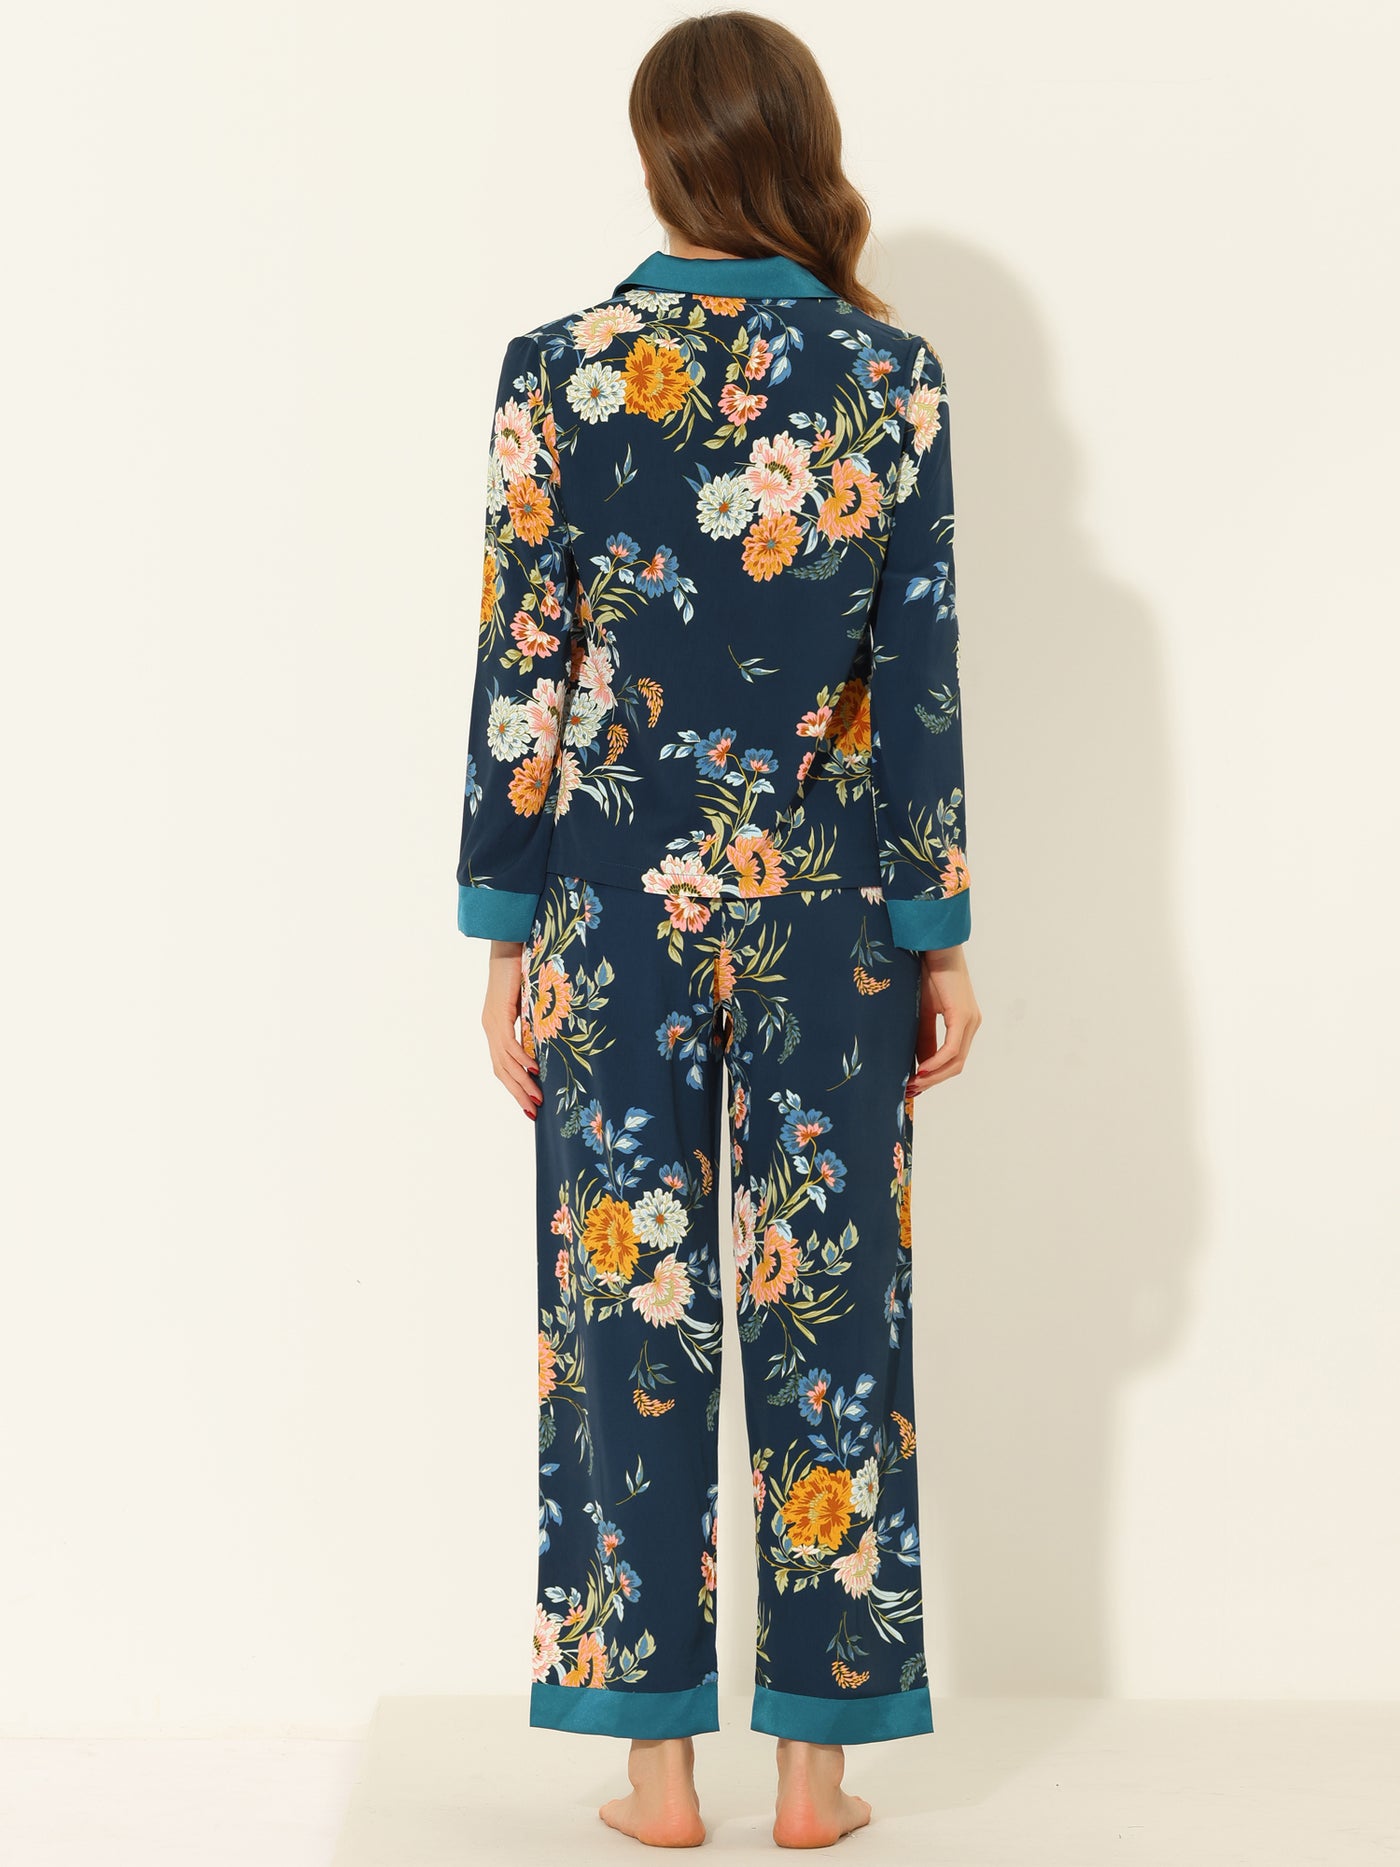 Bublédon Women's Floral Button Down Silk Sleepwear 2pcs Pajama Sets